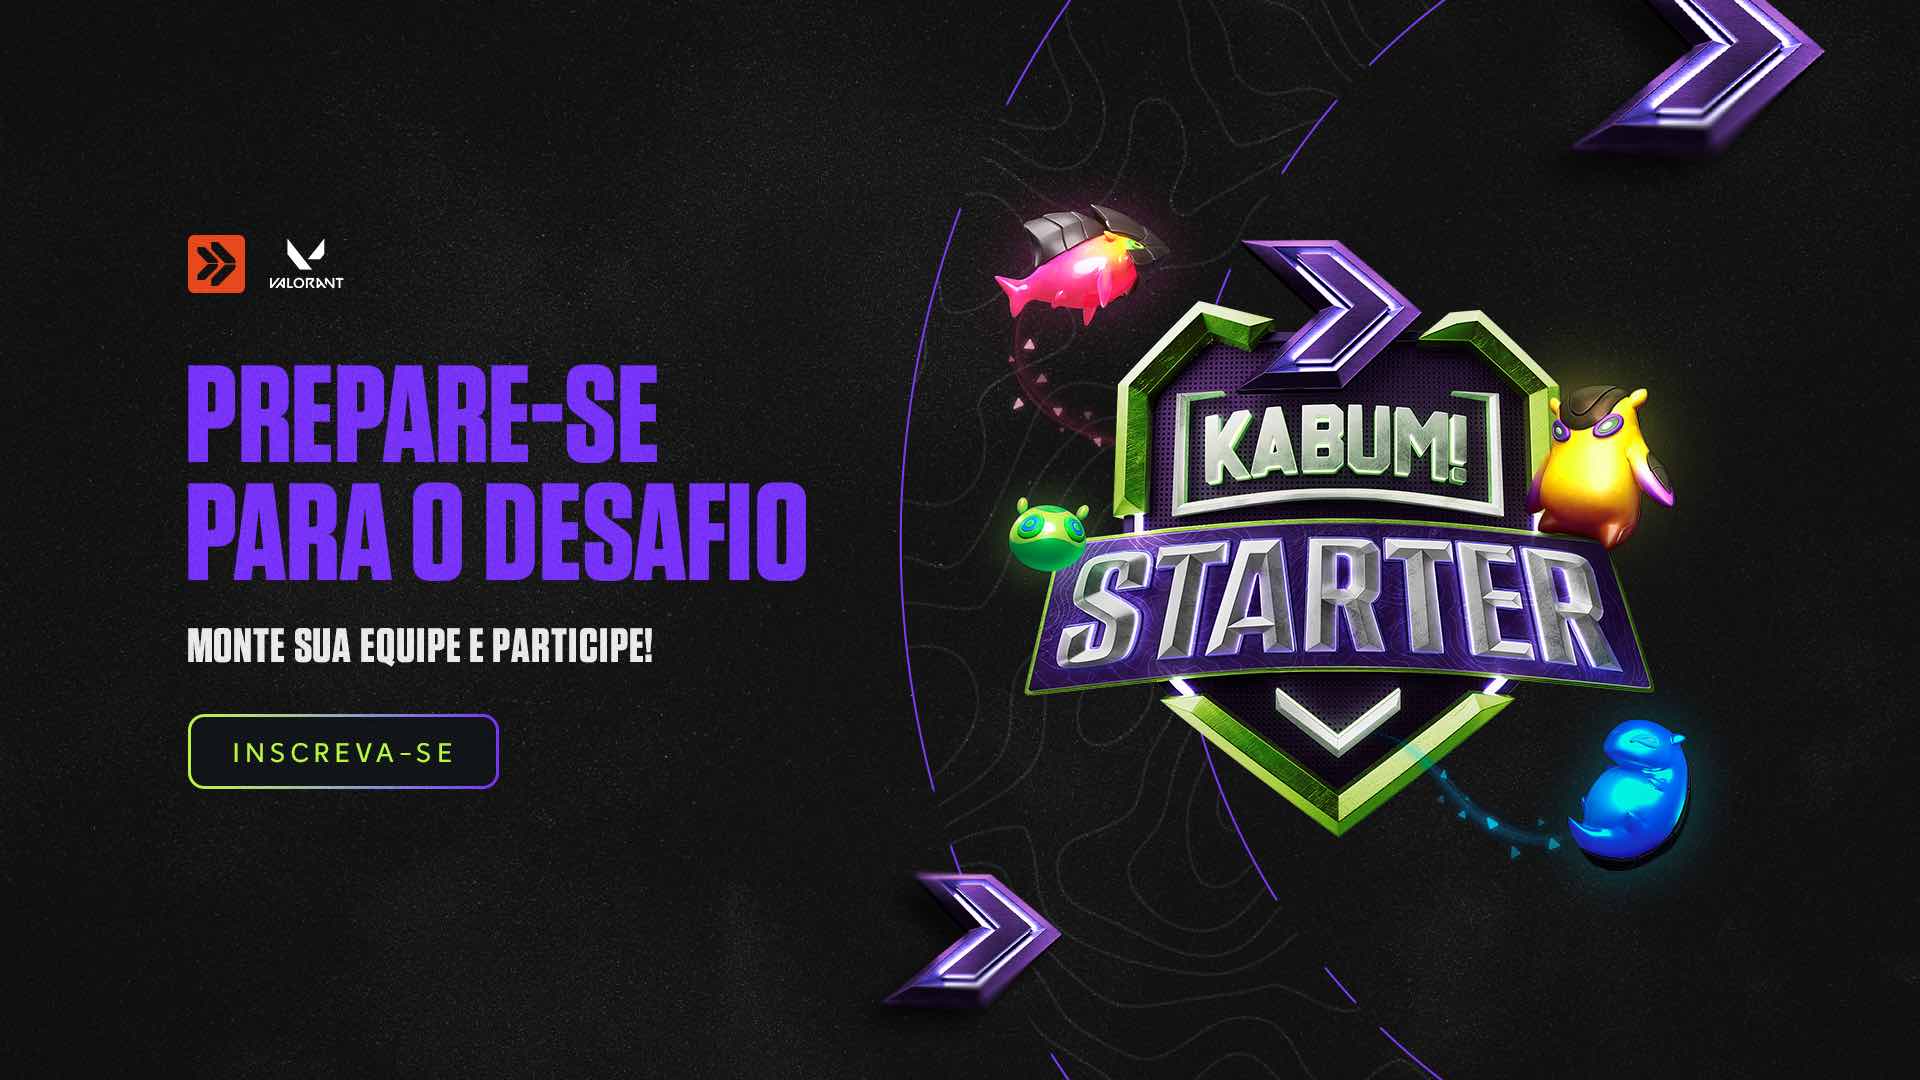 KaBuM! realiza campeonato gratuito de Valorant com R$ 1.600 em prêmios